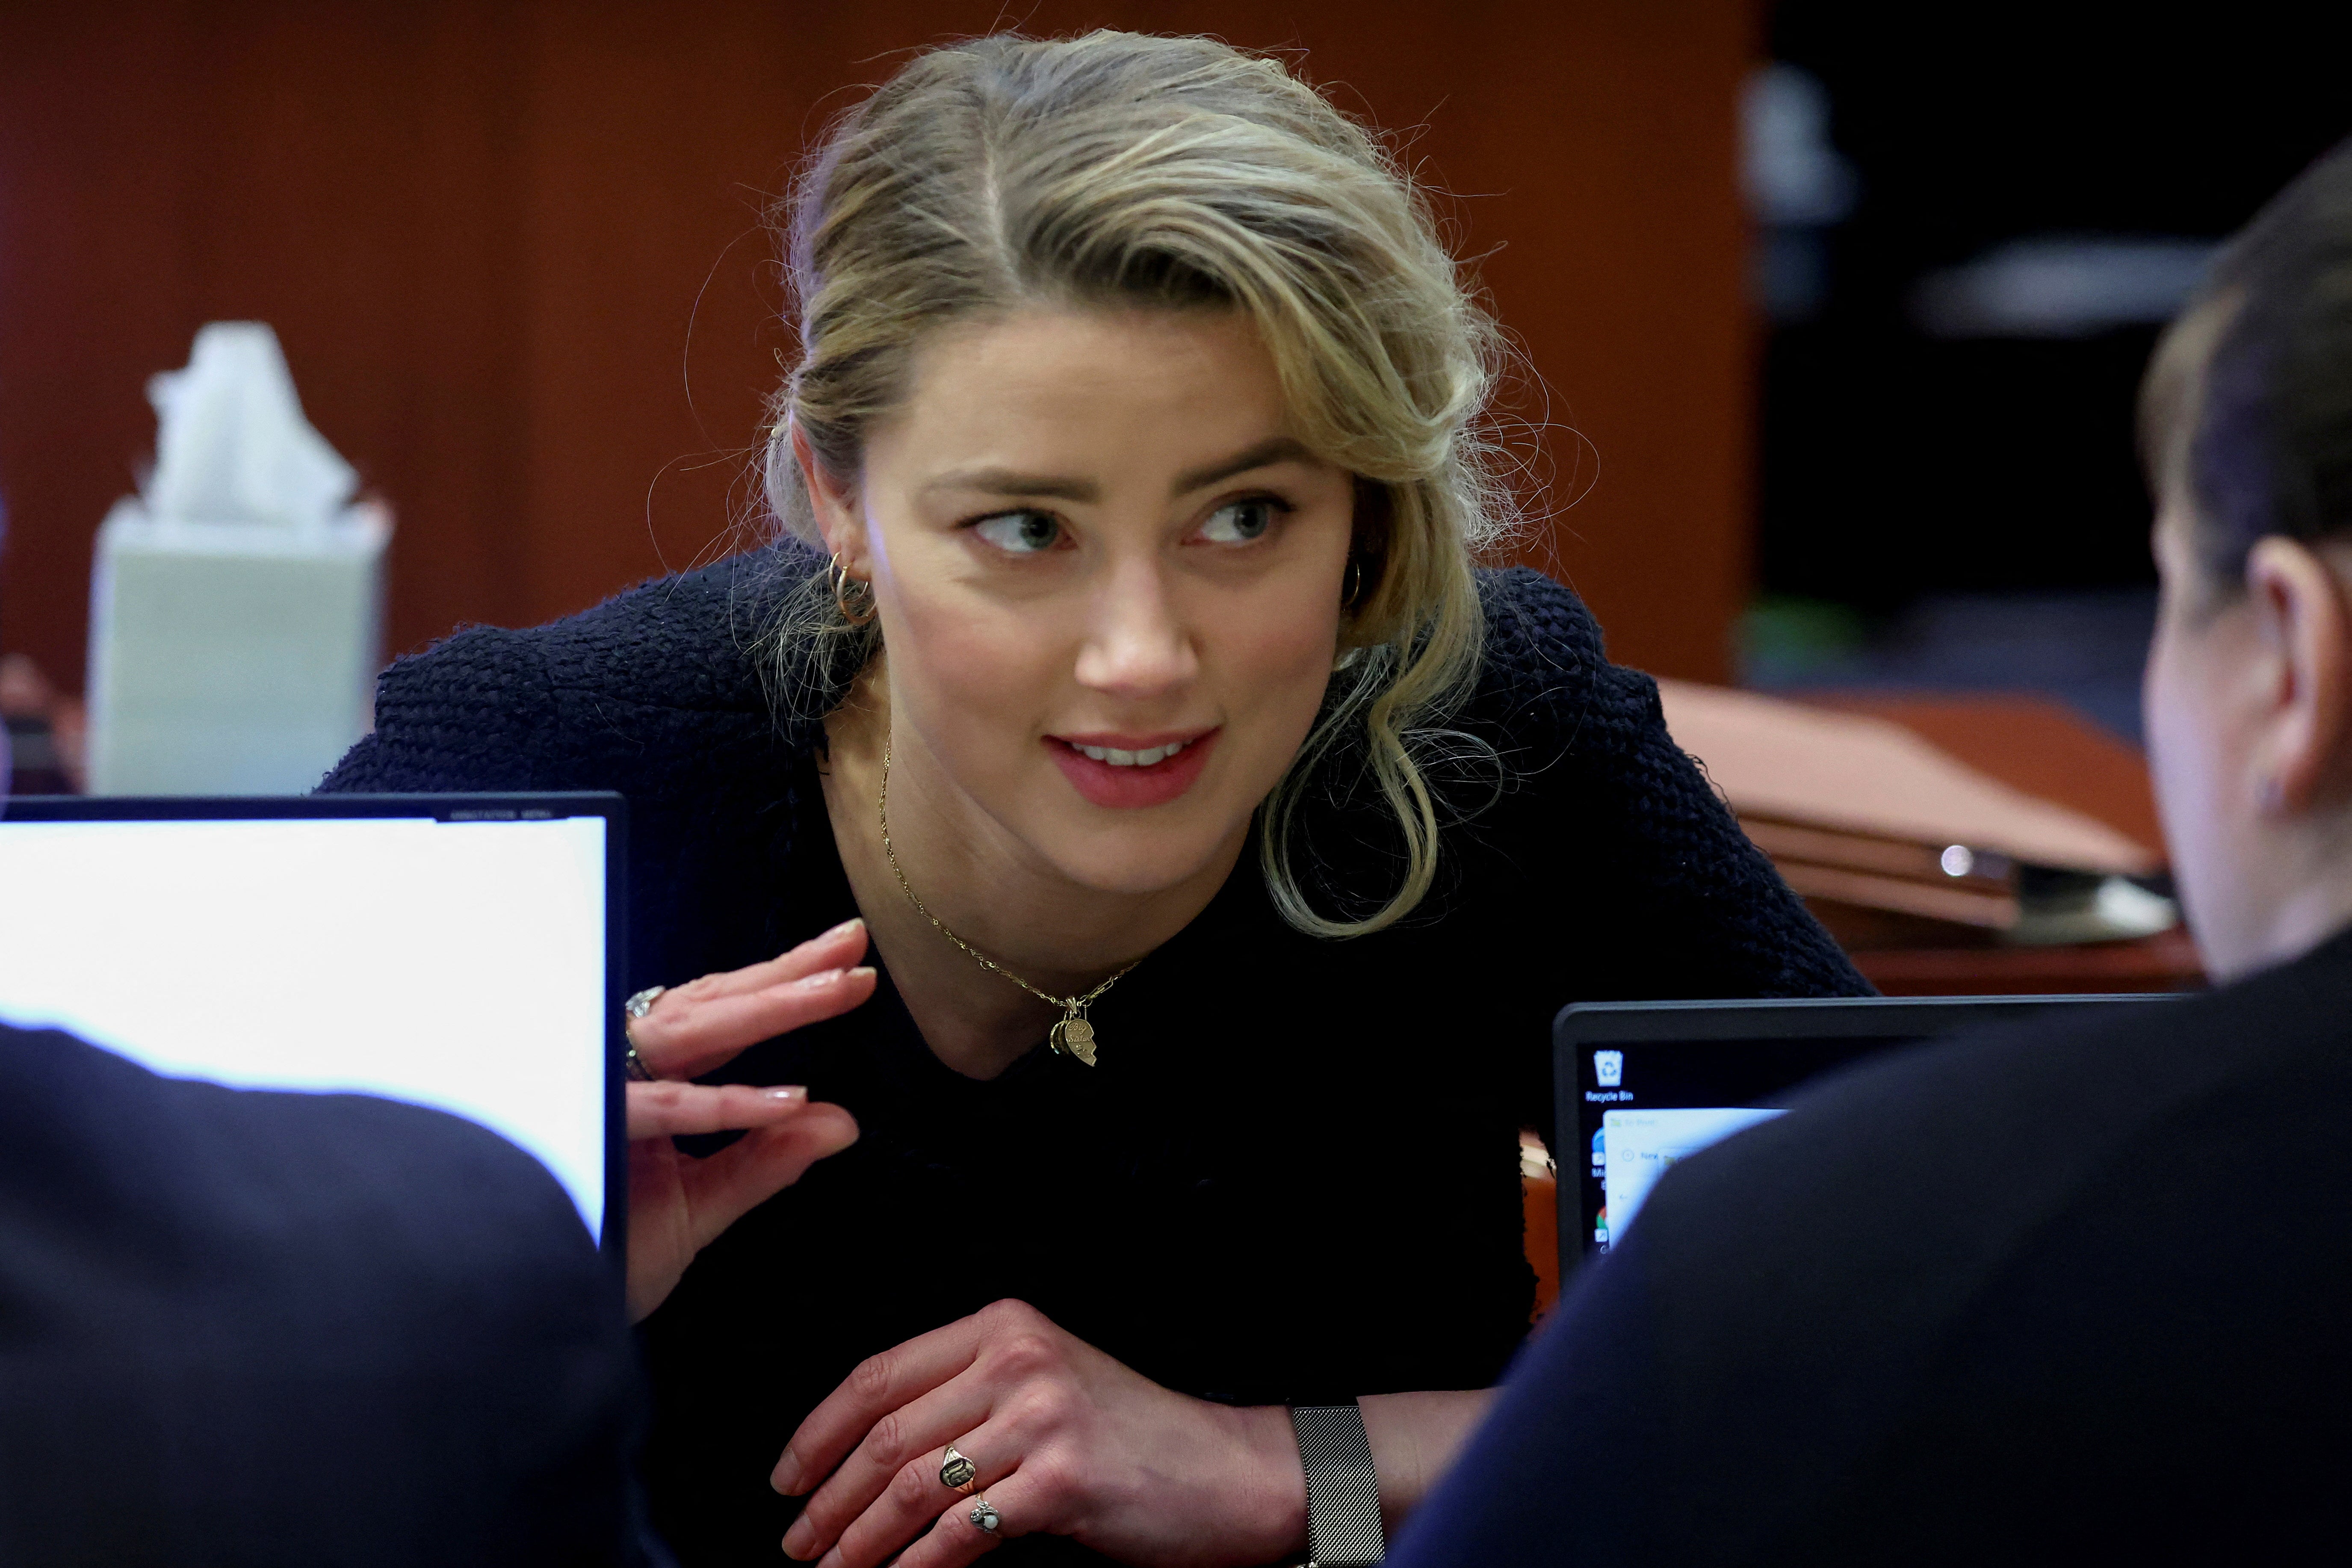 Amber Heard habla con su equipo legal durante el juicio por difamación contra su exmarido Johnny Depp, en el Tribunal de Circuito del Condado de Fairfax, en Fairfax, Virginia, Estados Unidos, el 28 de abril